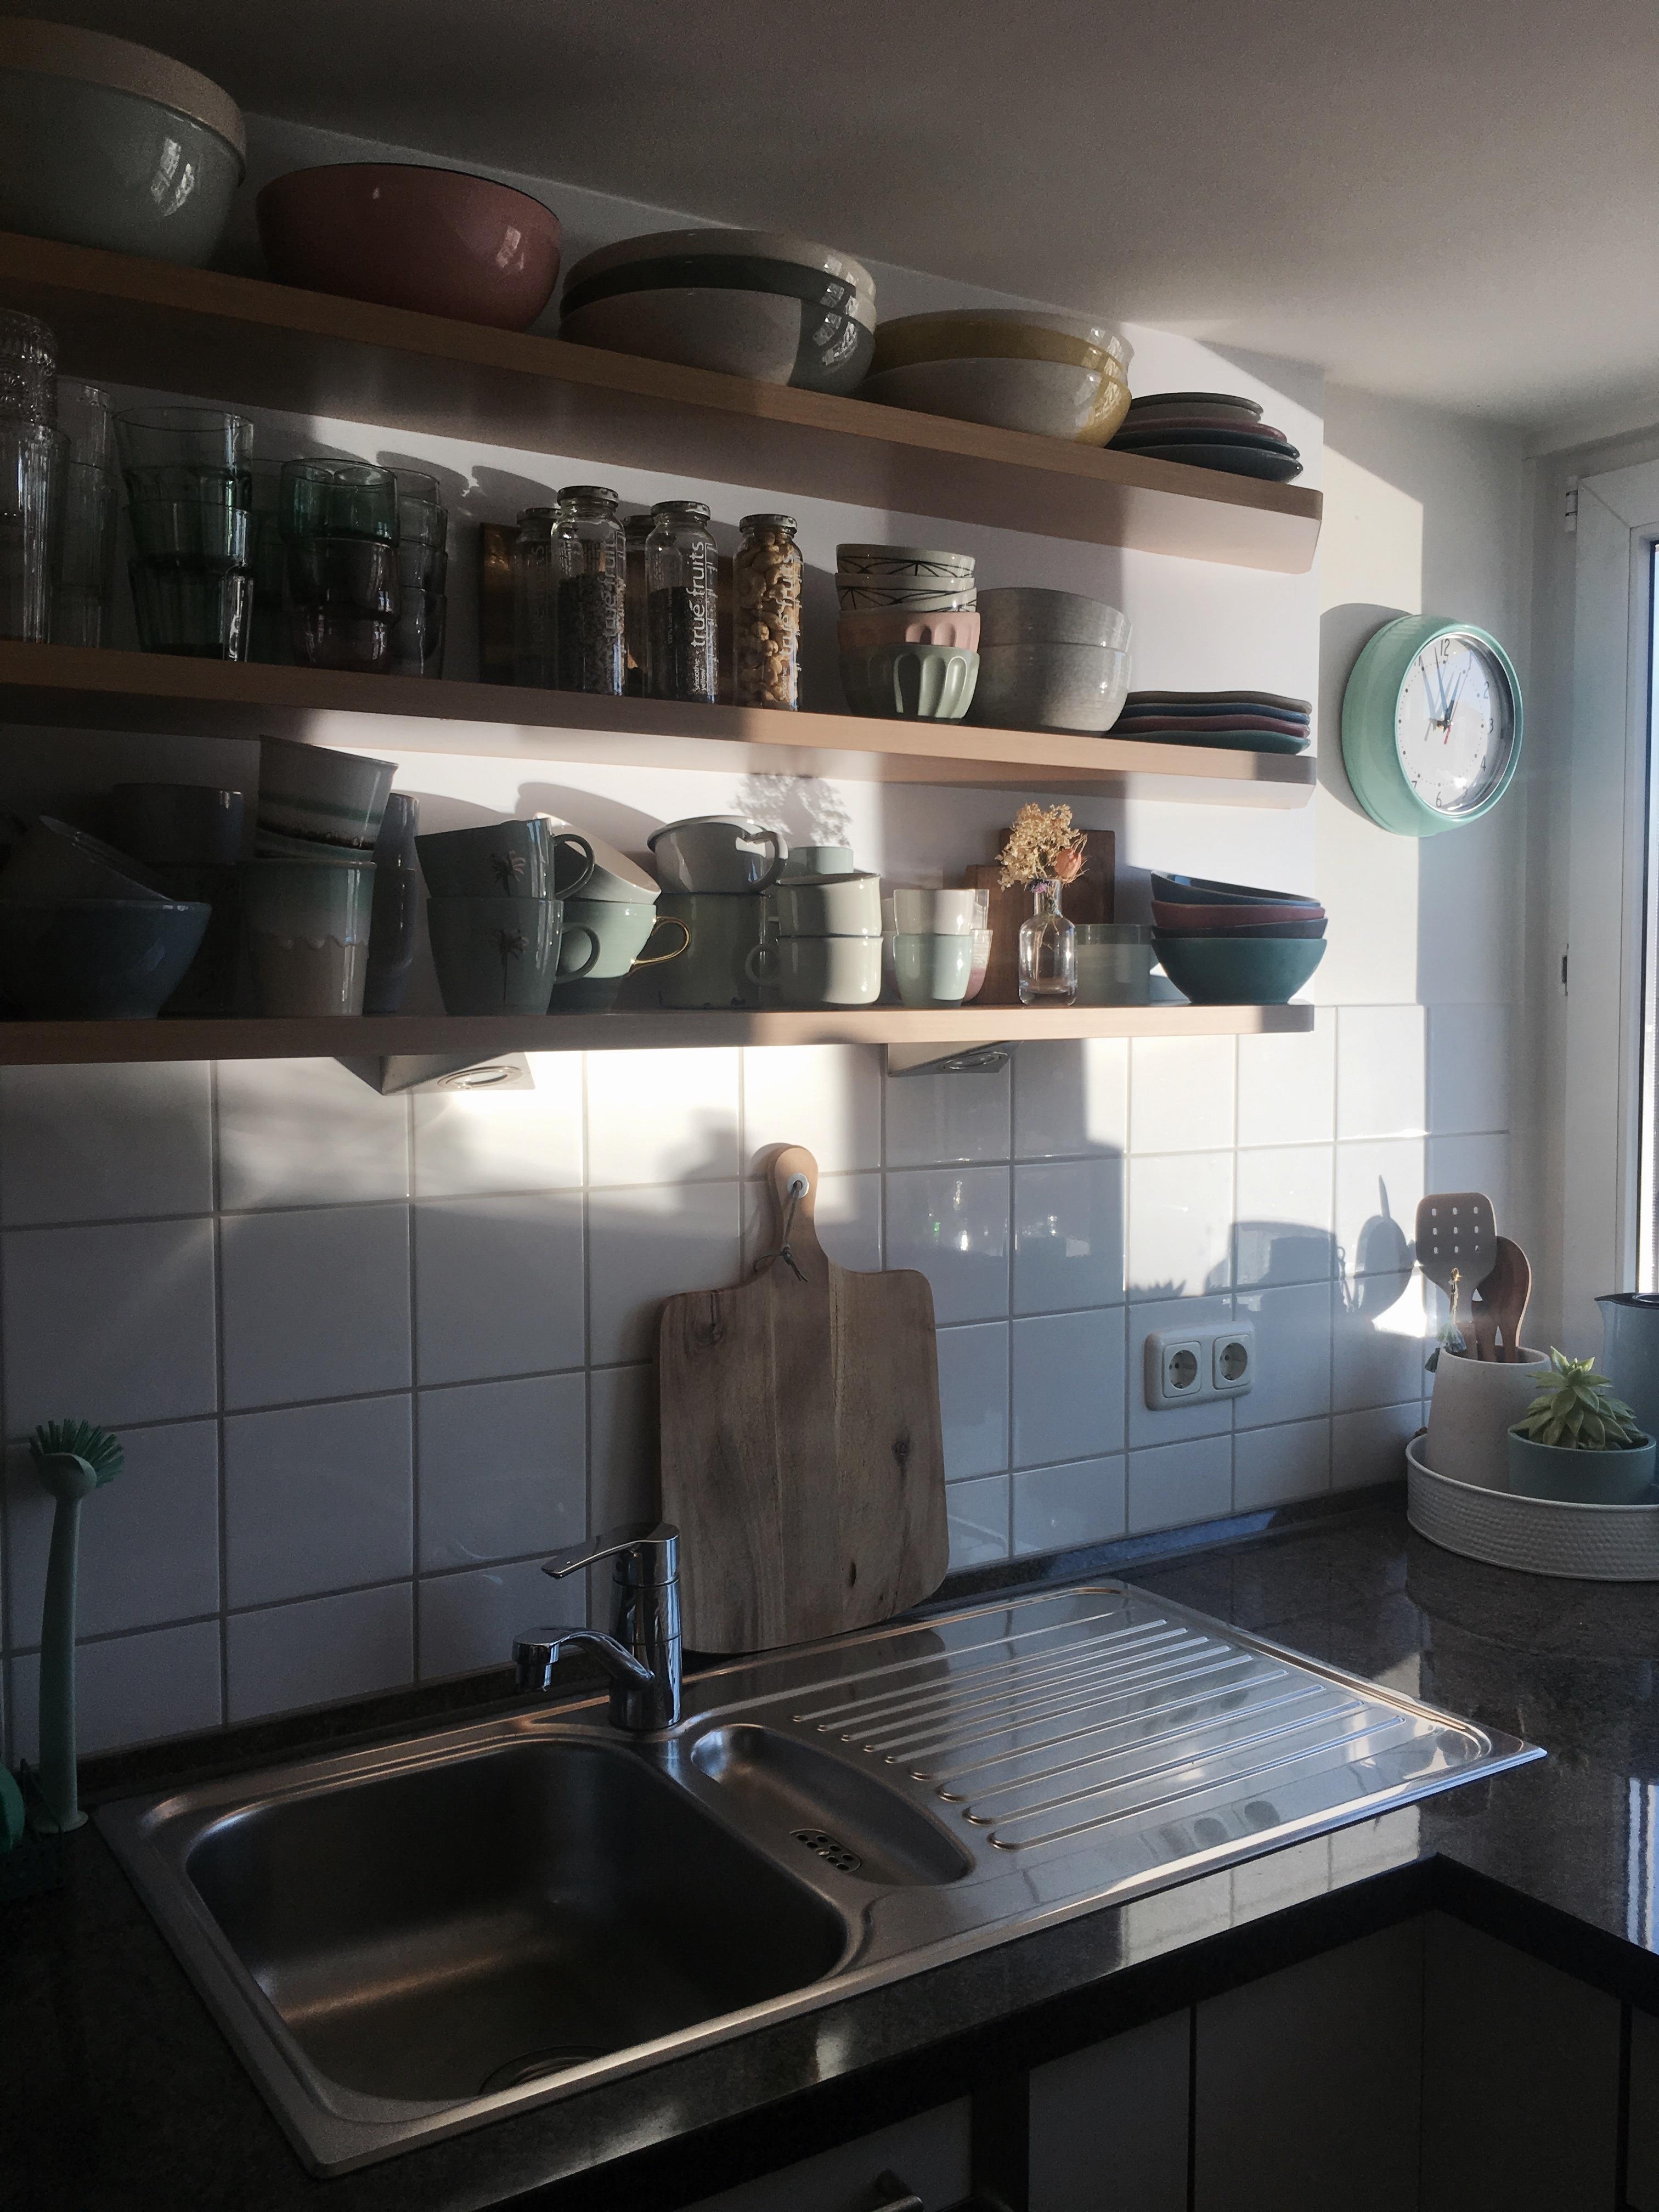 Geschirrliebe 🙈
#interior #kitchen #geschirr #couchmagazin